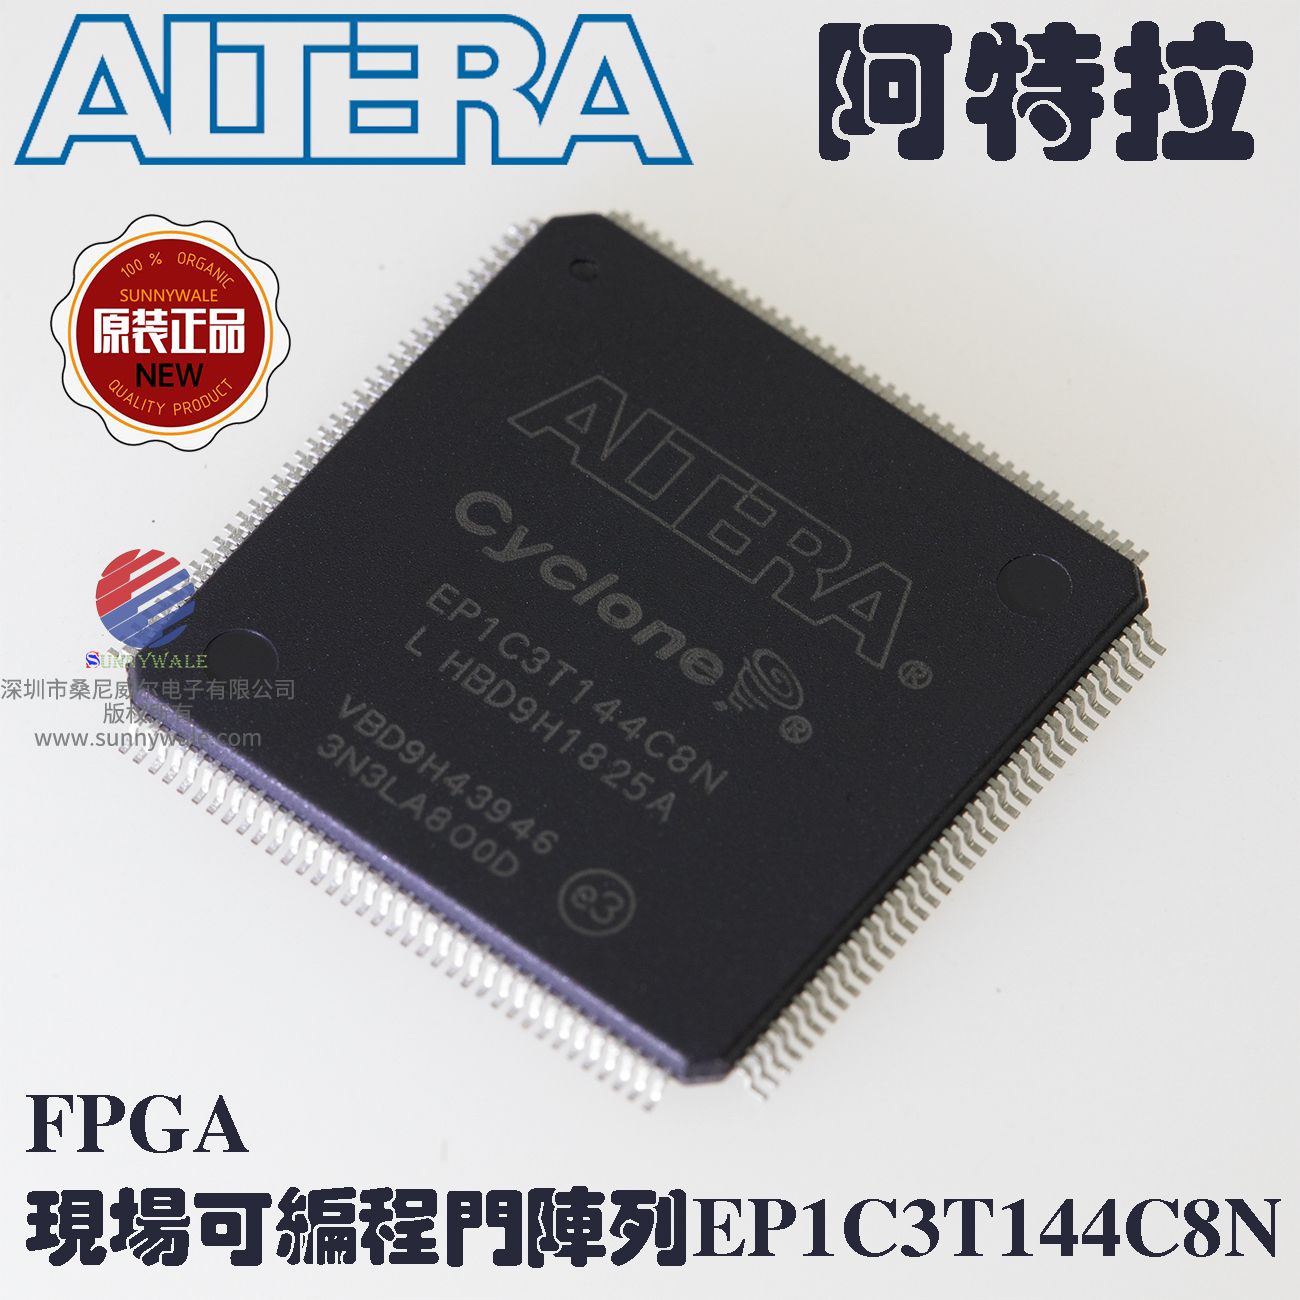 EP1C3T144C8N， ALTERA FPGA，阿特拉Cyclone，现场可编程门阵列，汽车四轮定位仪主控芯片